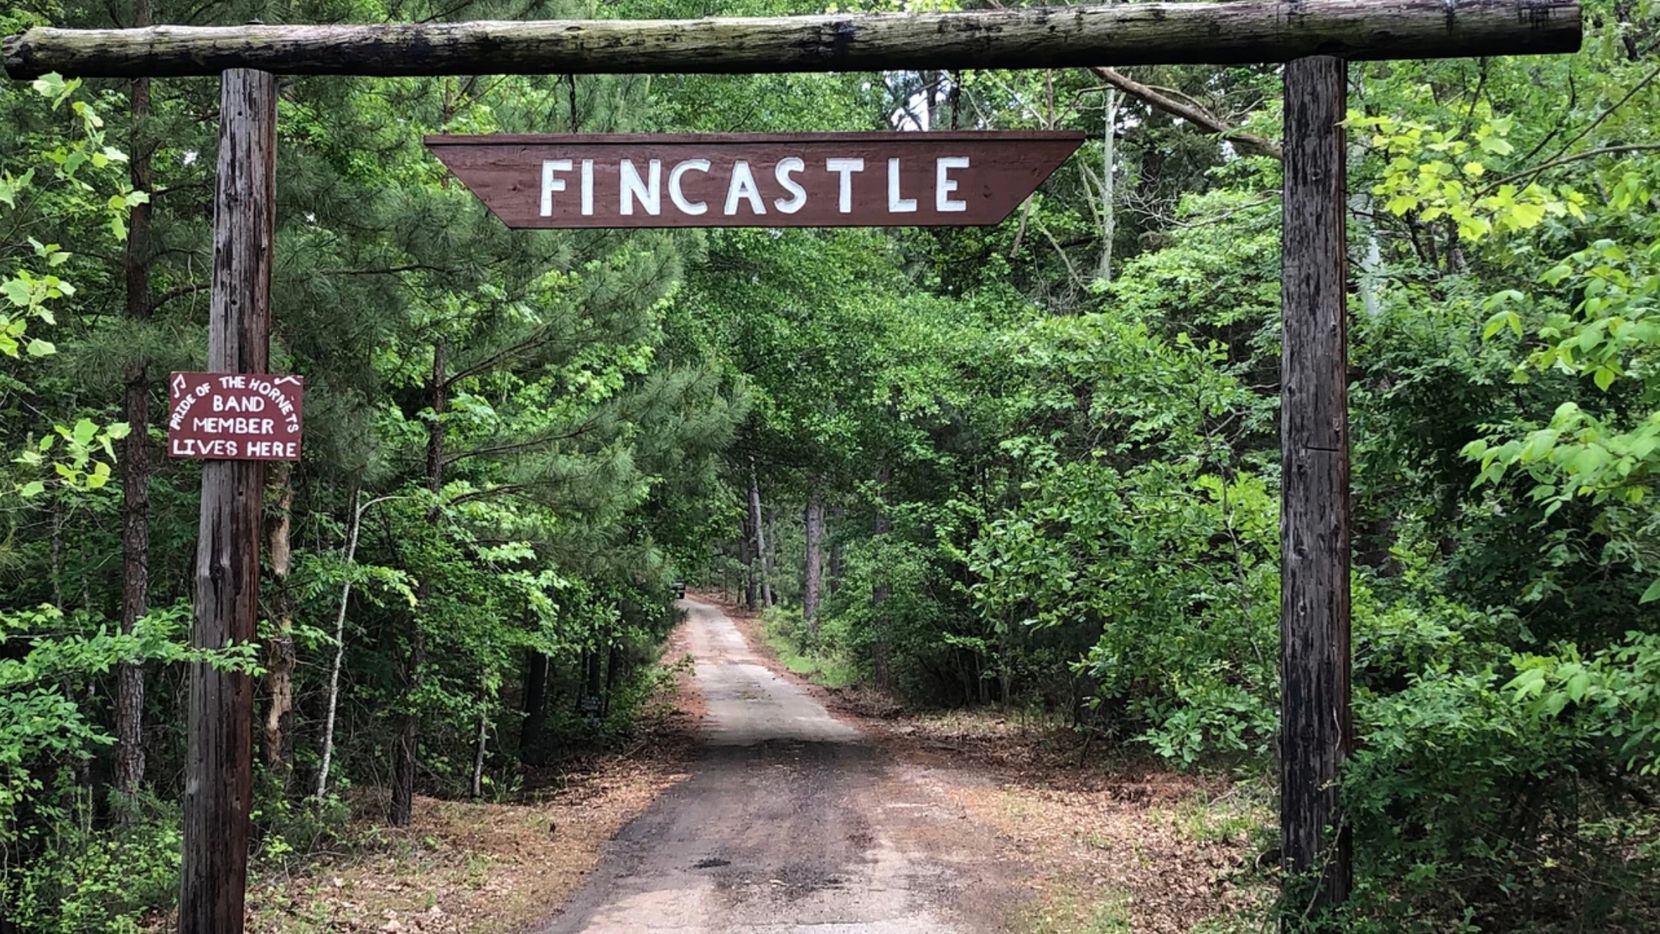 Fincastle lleva el nombre de un asentamiento de los primeros colonizadores.